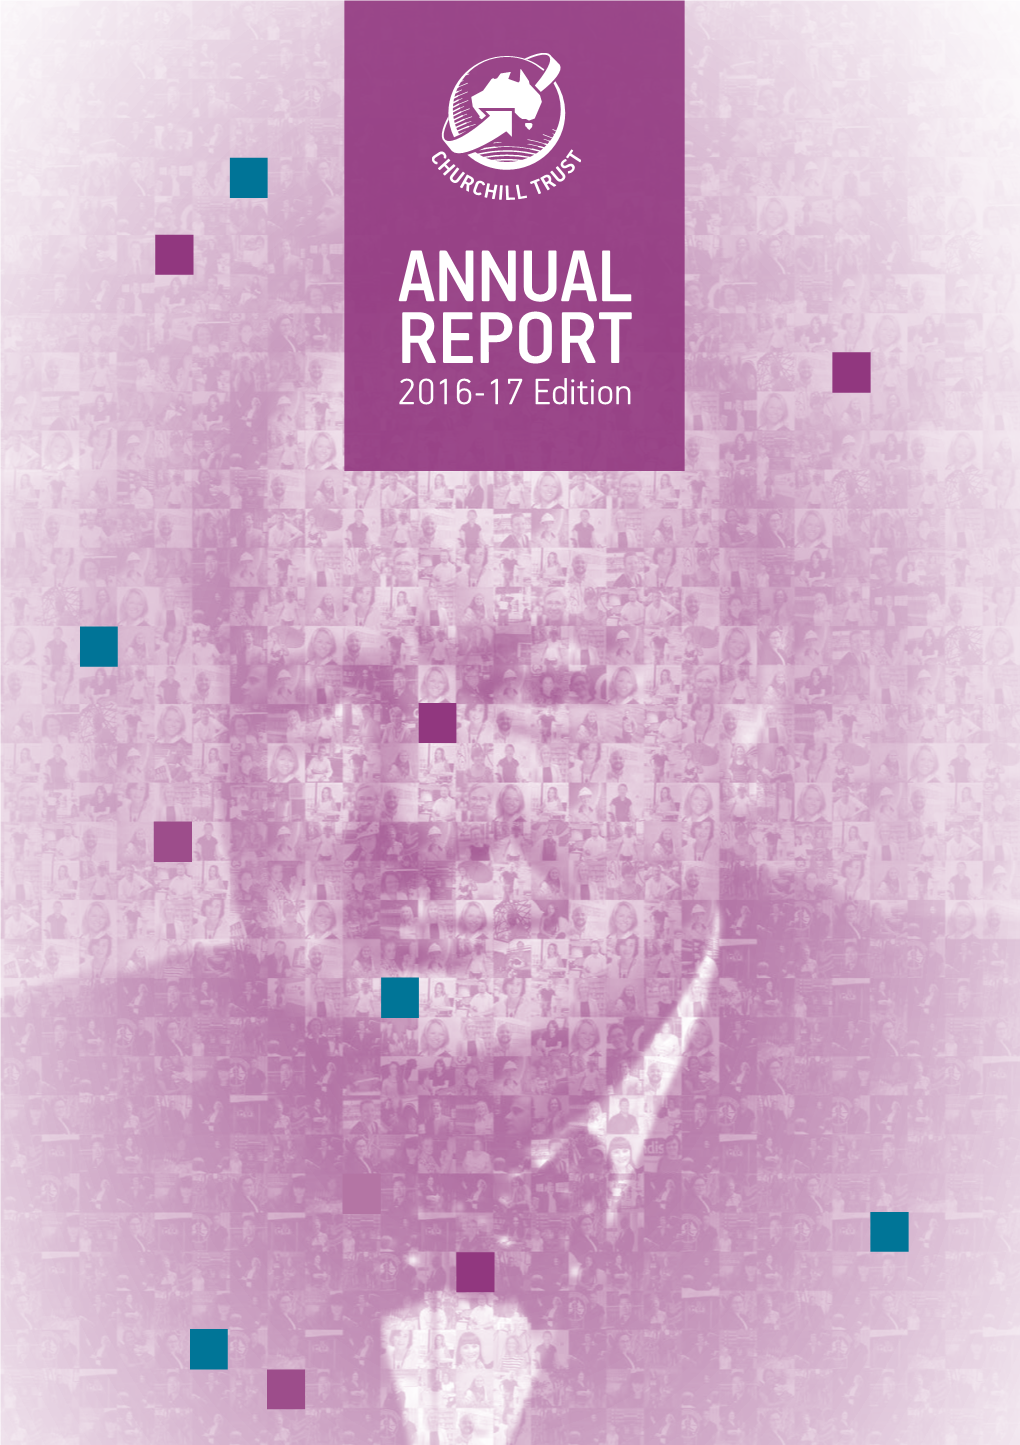 ANNUAL REPORT 2016-17 Edition the Winston Churchill Memorial Trust  Annual Report 2016-17 Edition